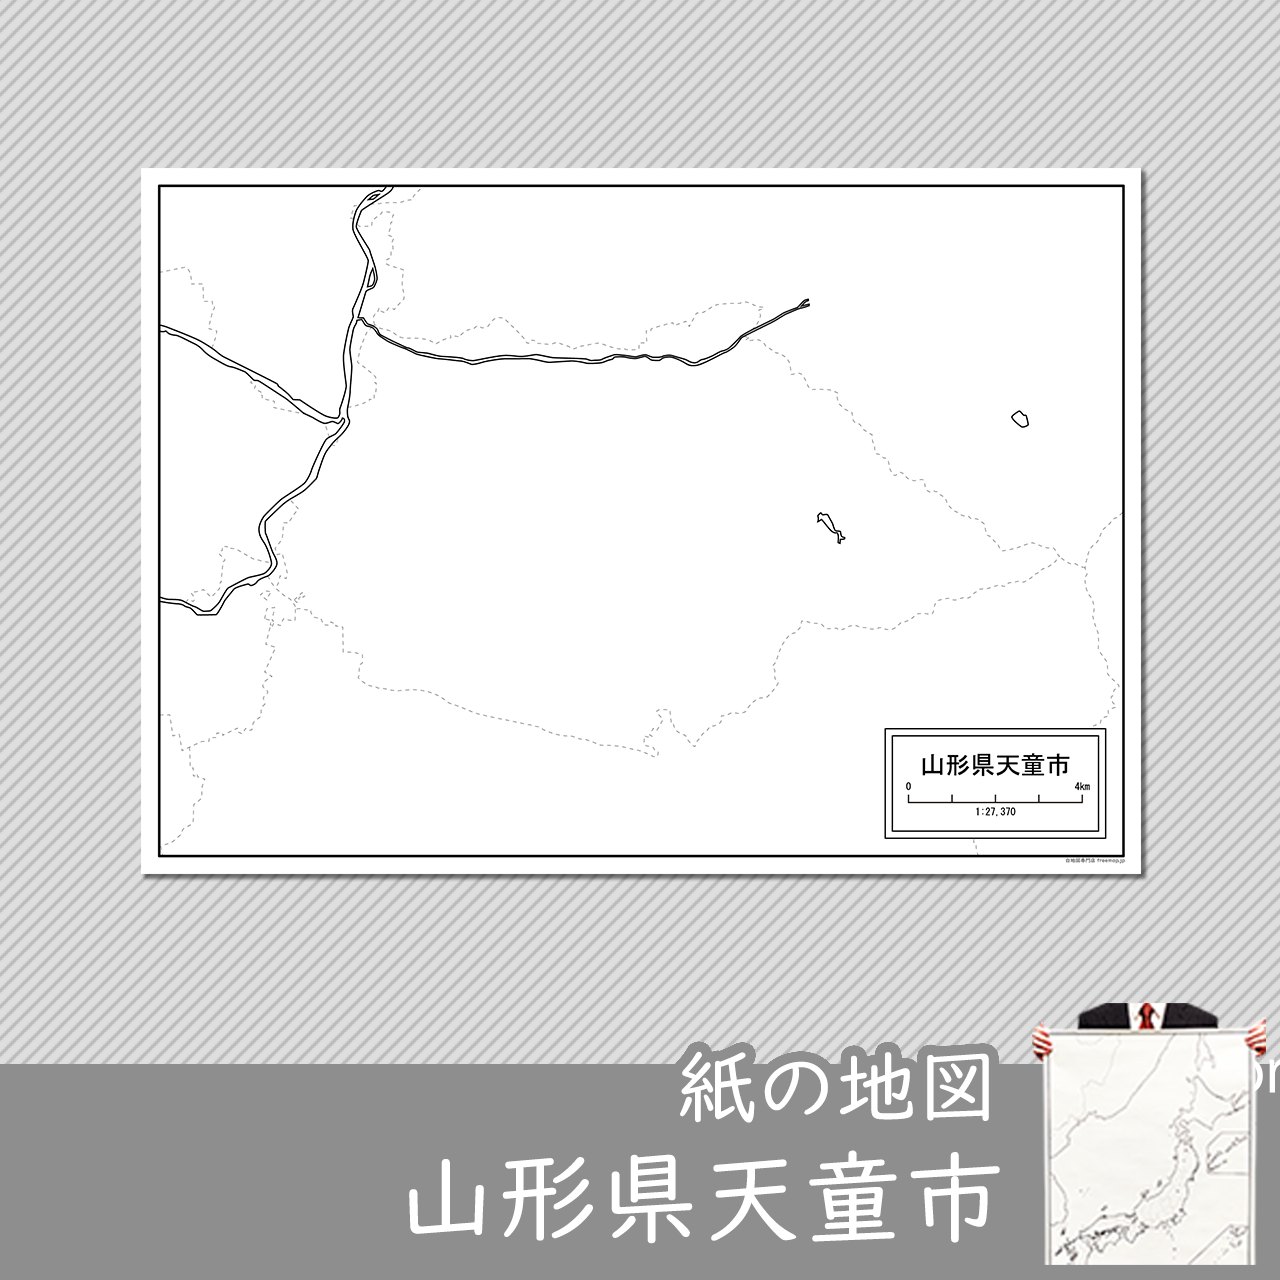 天童市の紙の白地図のサムネイル